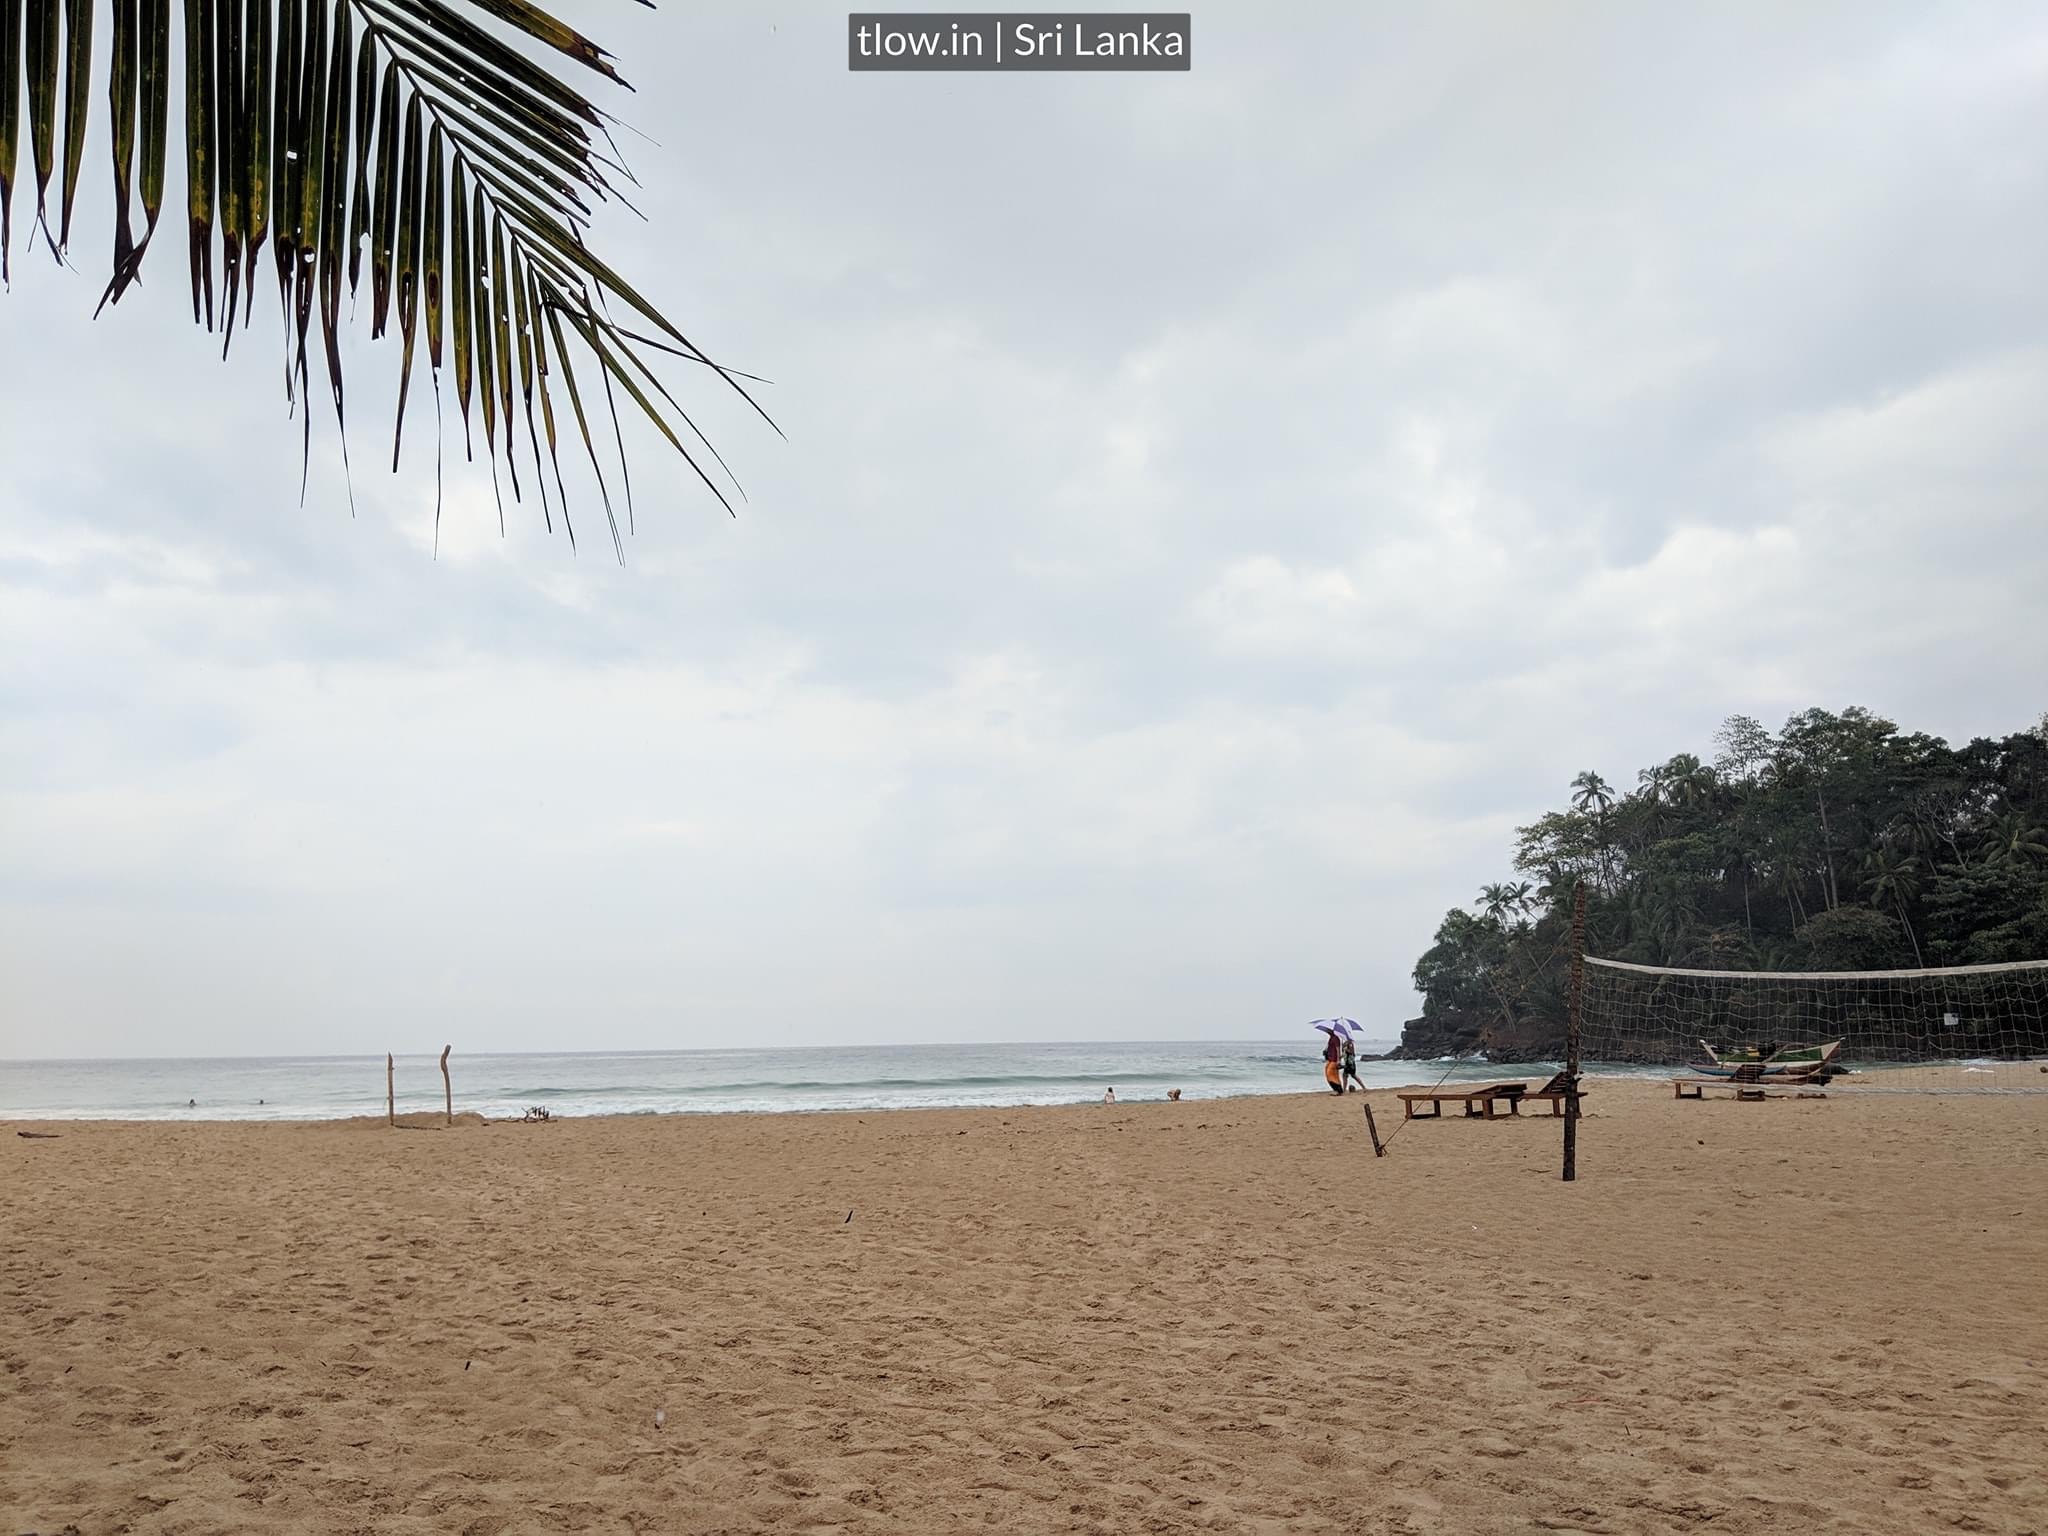 Volleyball at talalle beach Sri Lanka